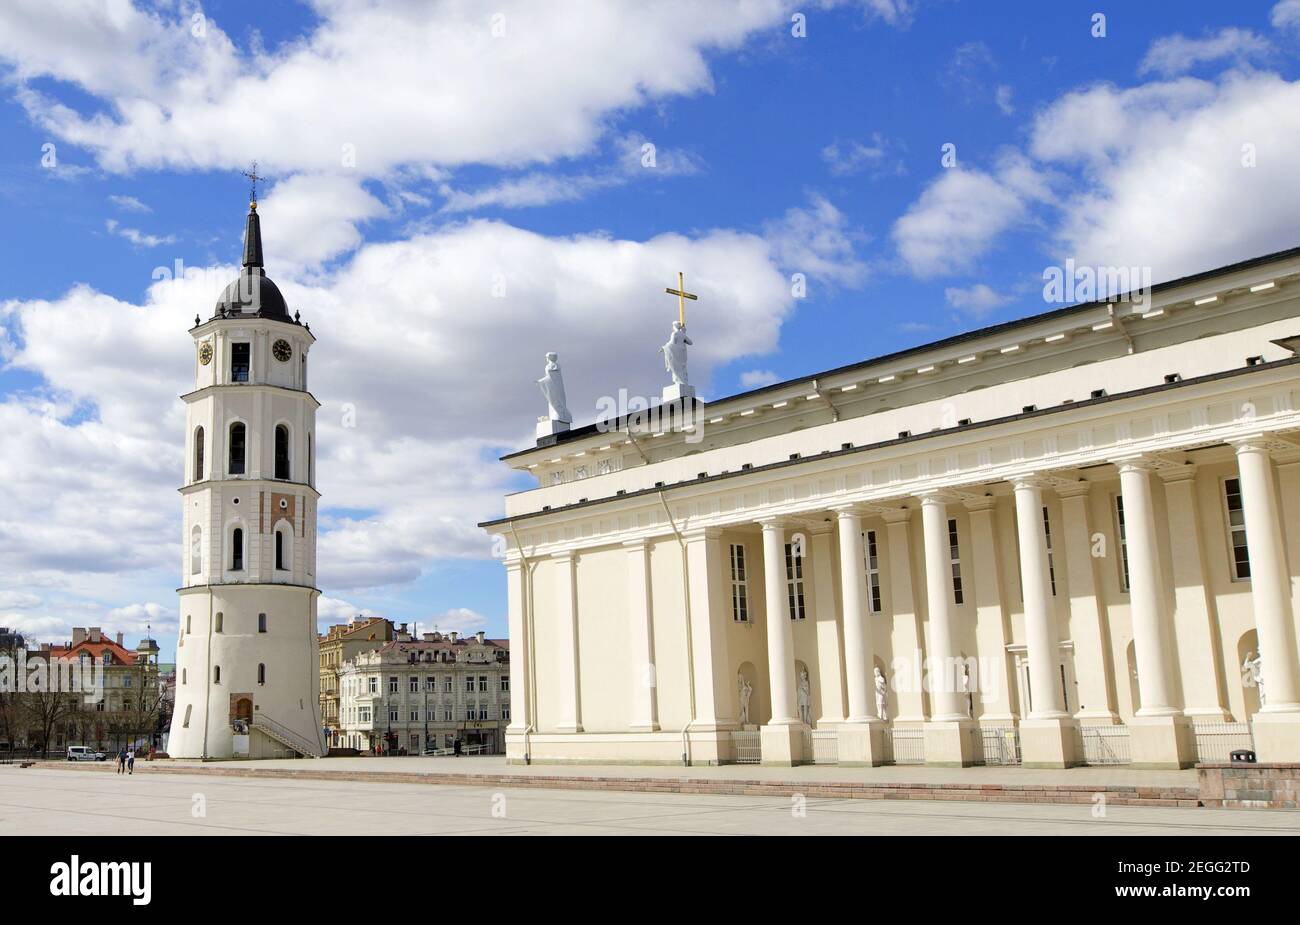 La basilique de la cathédrale et la tour de la cloche de la cathédrale de Vilnius, capitale de la Lituanie. Banque D'Images